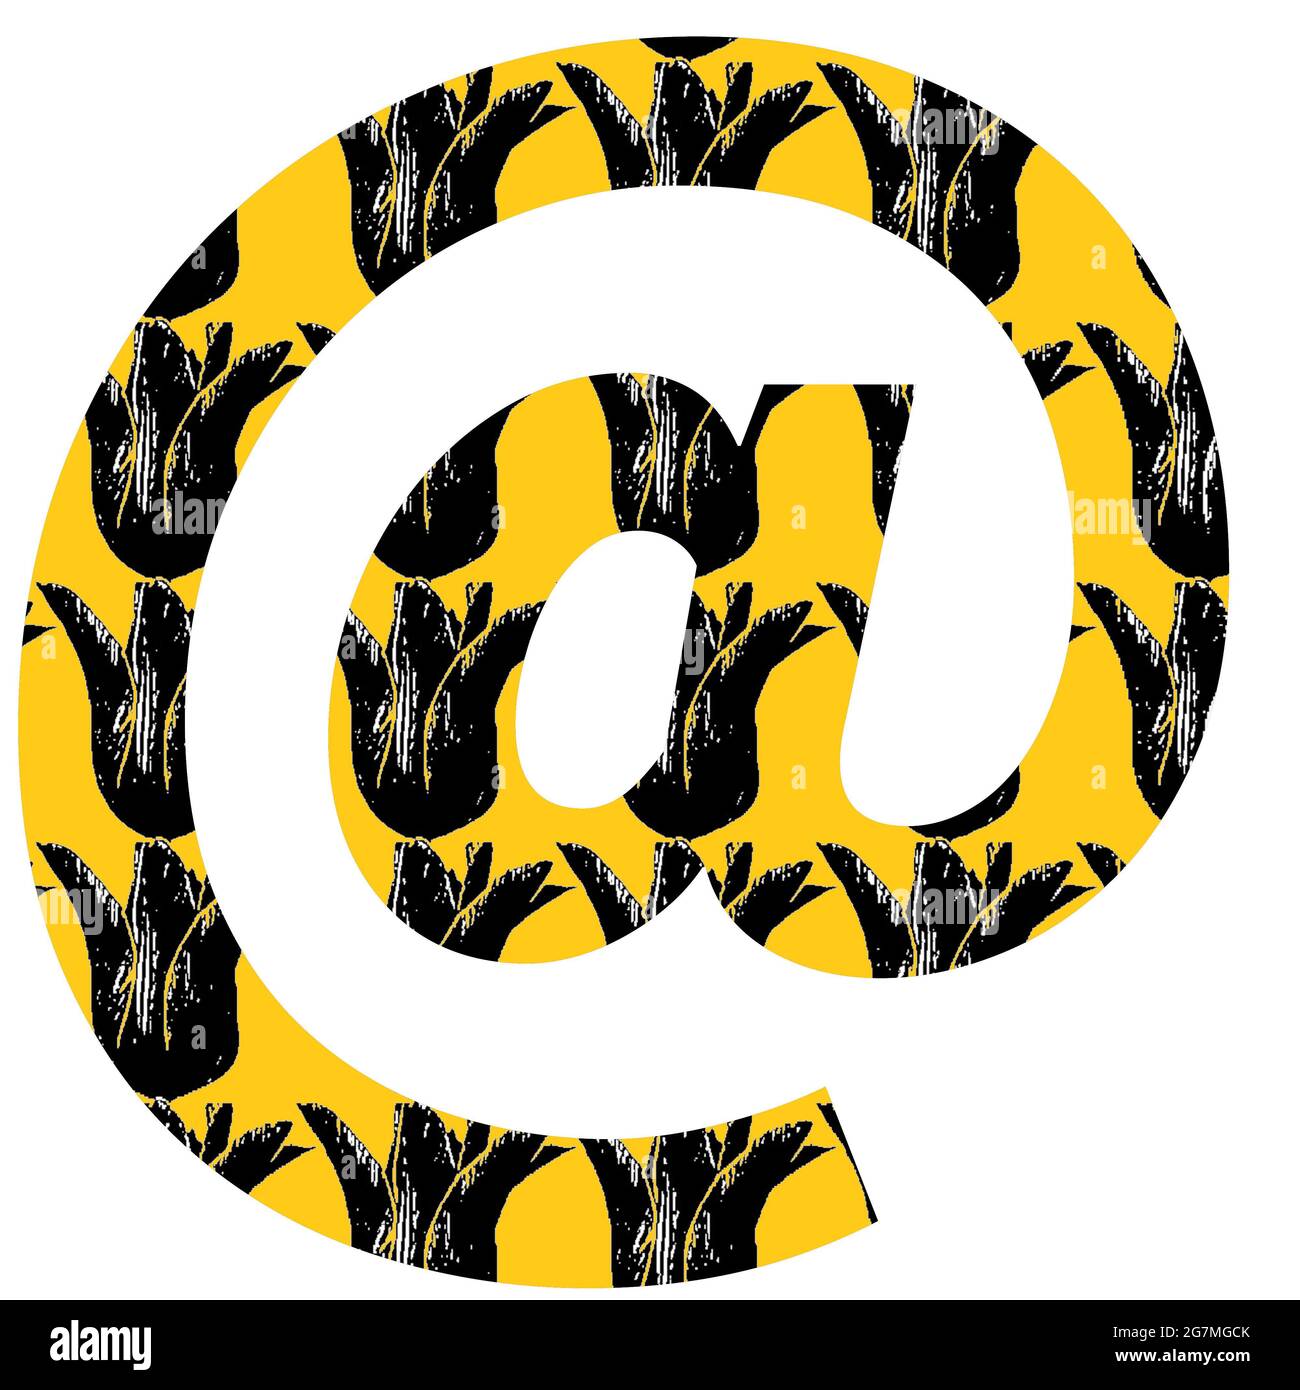 Al segno, segno di posta dell'alfabeto fatto con un motivo di tulipano nero su uno sfondo giallo, isolato su uno sfondo bianco Foto Stock